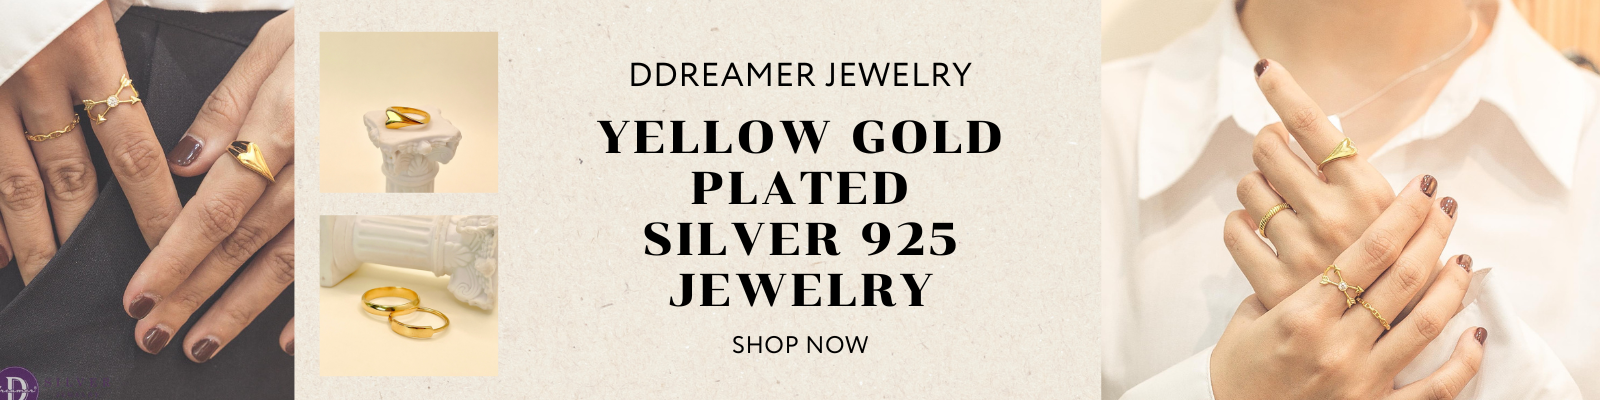 Gold Plated Silver Jewelry - Trang Sức Bạc 925 Xi Vàng/Vàng Hồng